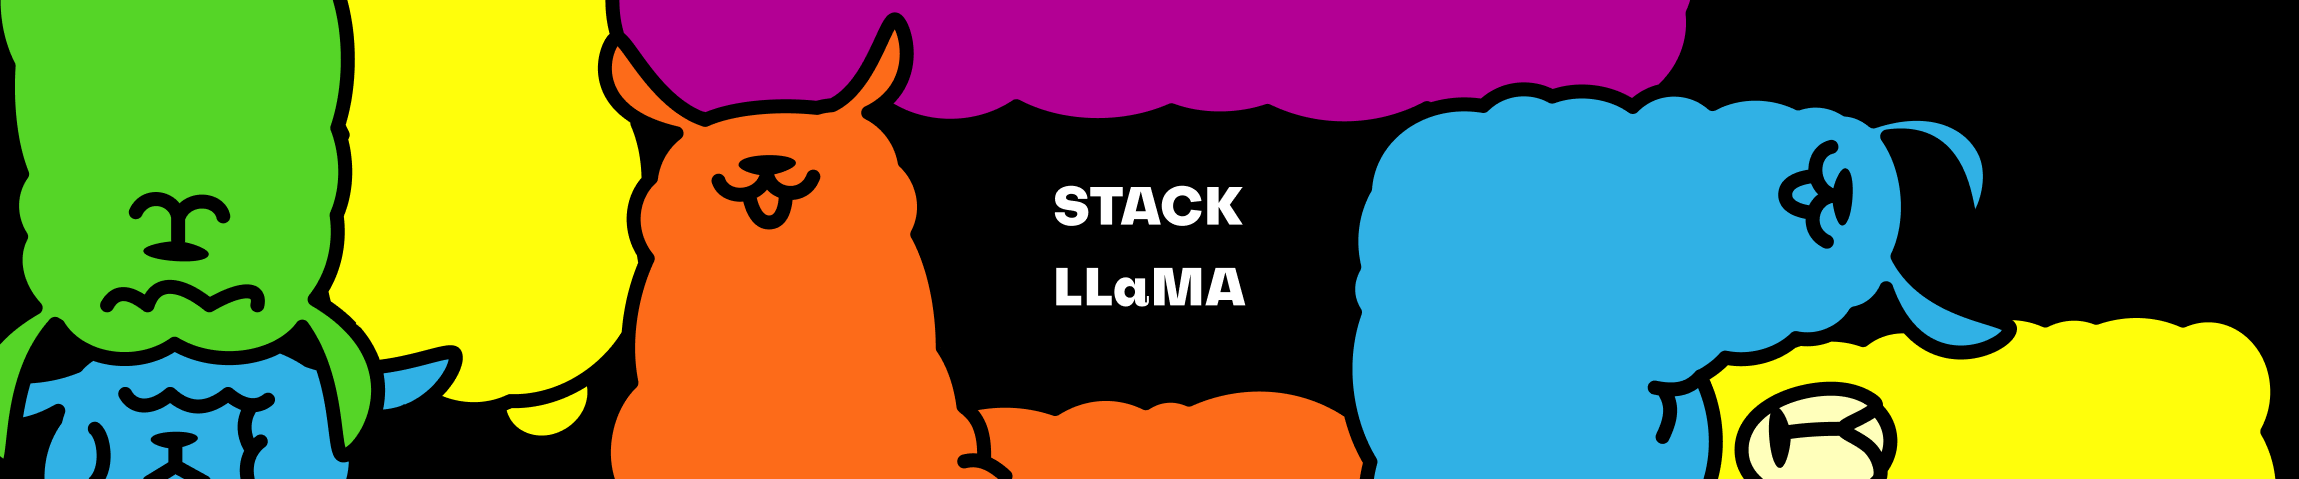 stackllama_logo.png